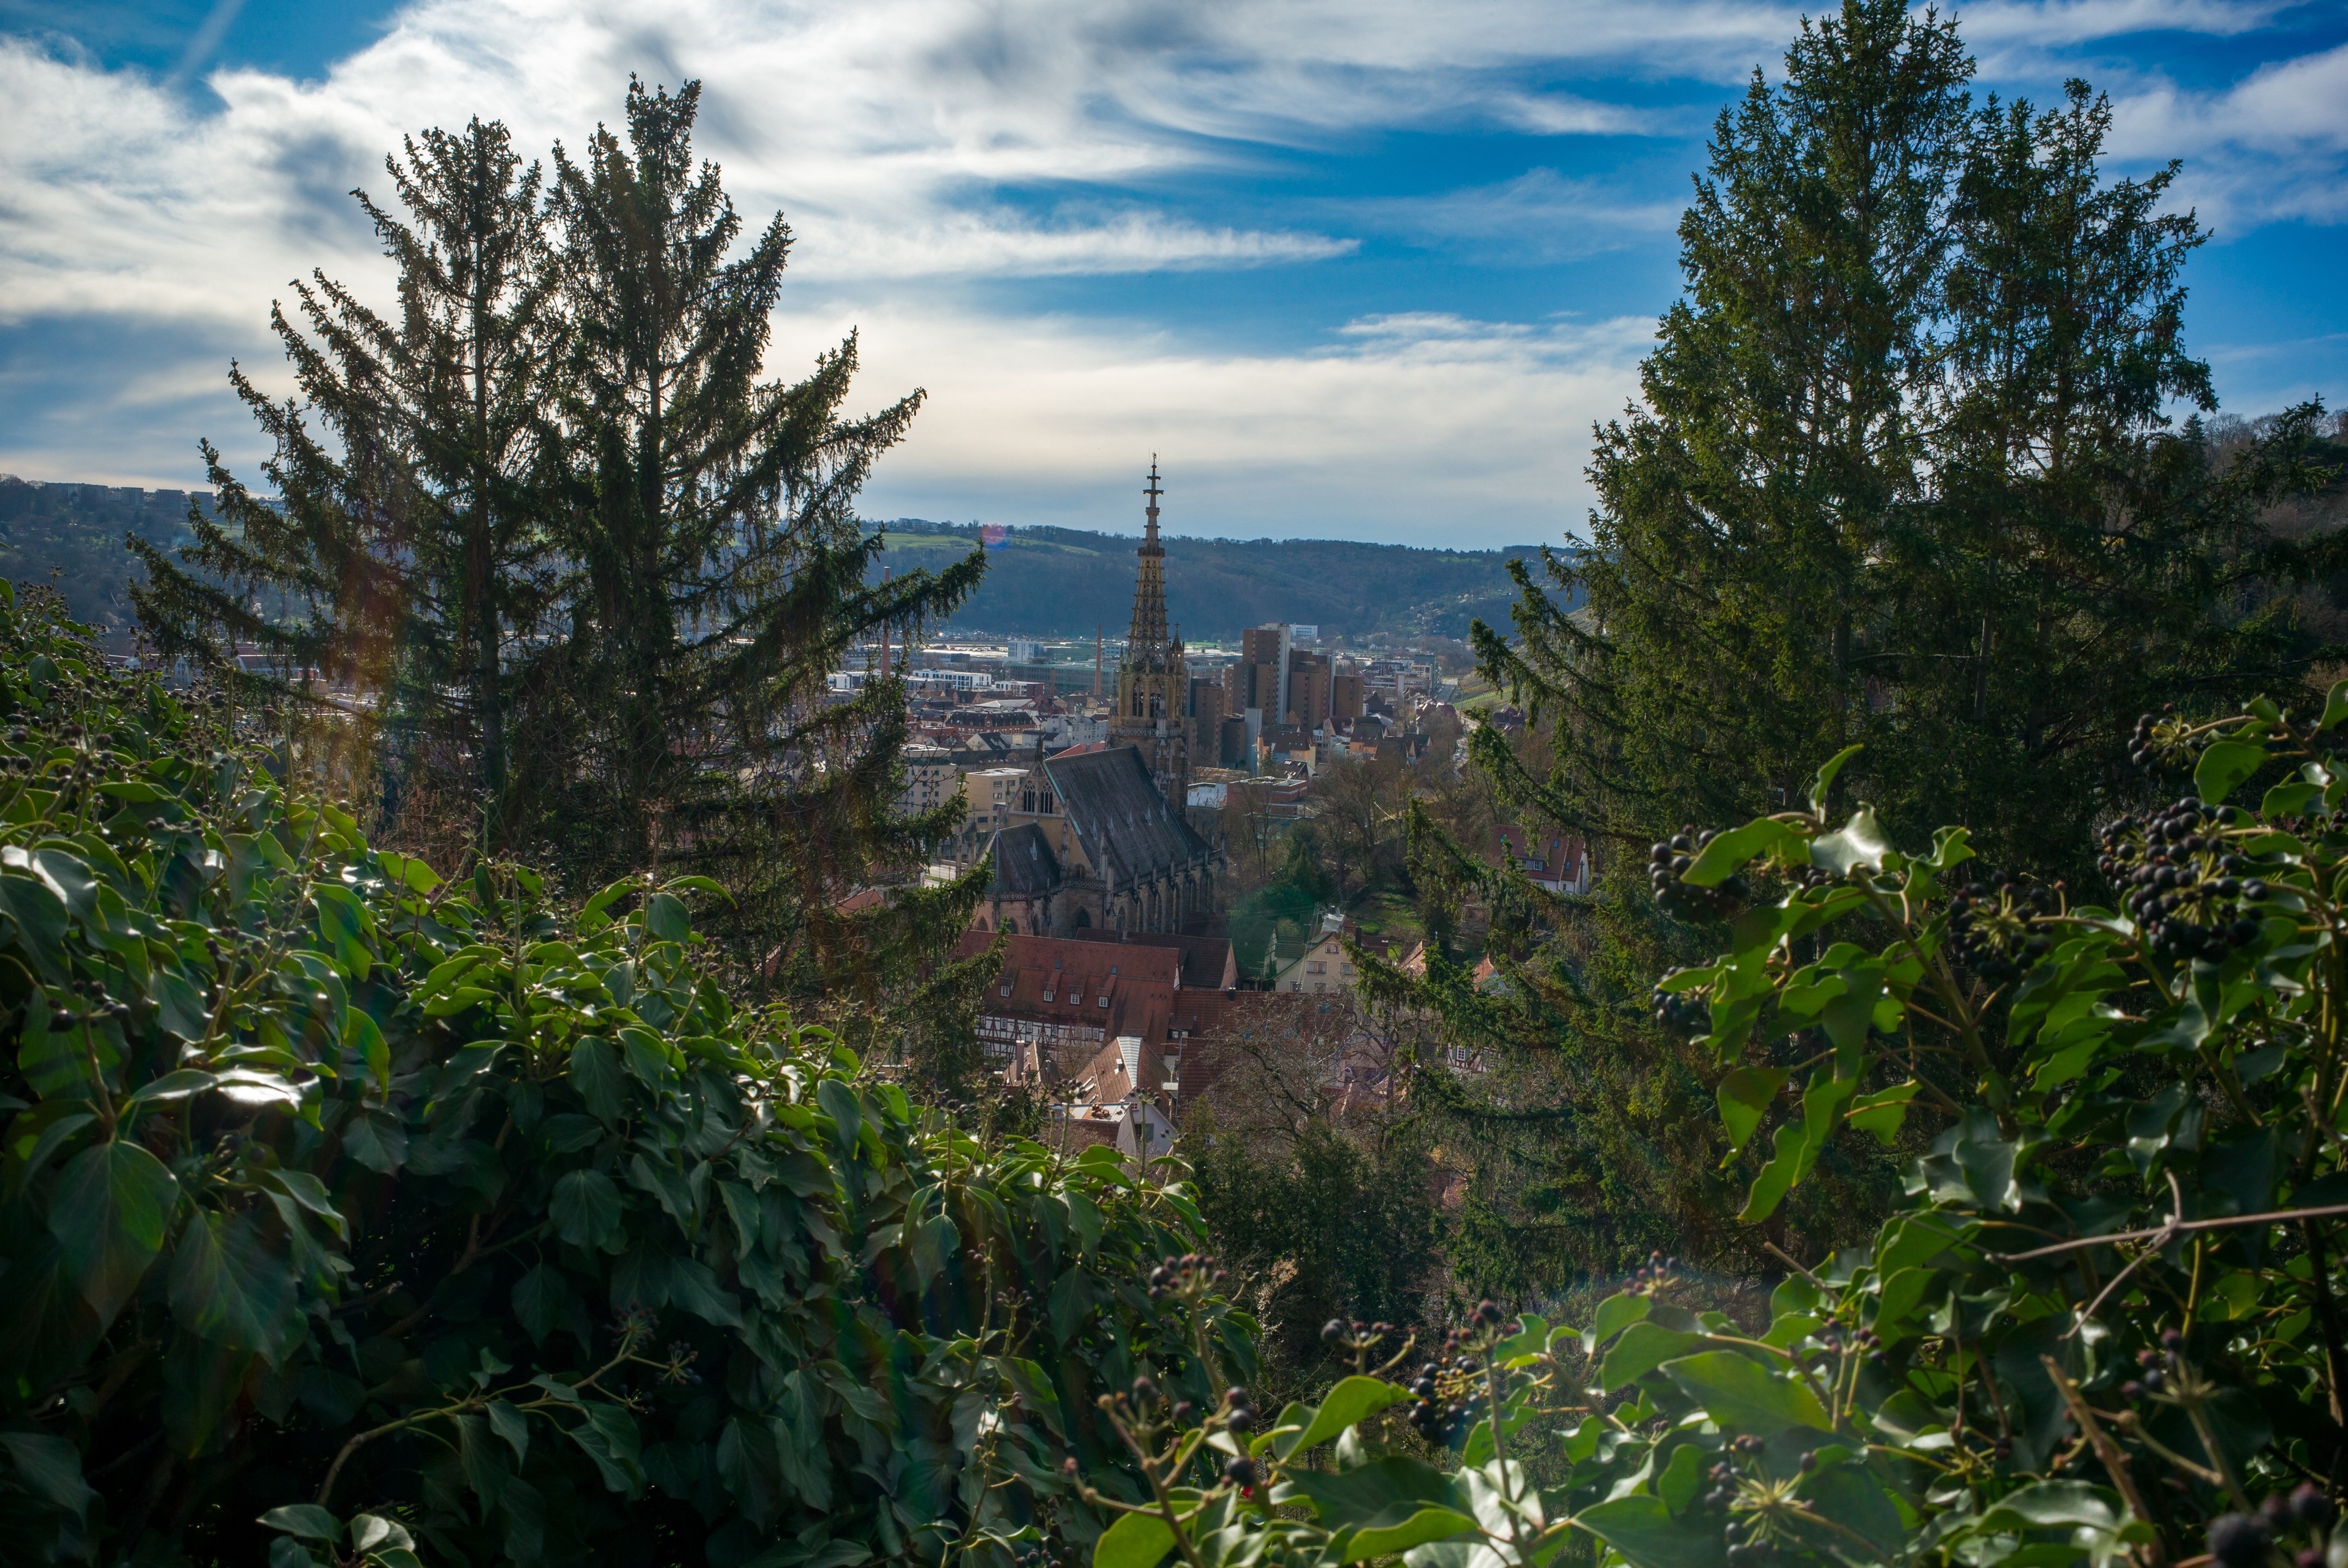 Blick auf die Frauenkirche in #Esslingen, von der Burg aus gesehen.